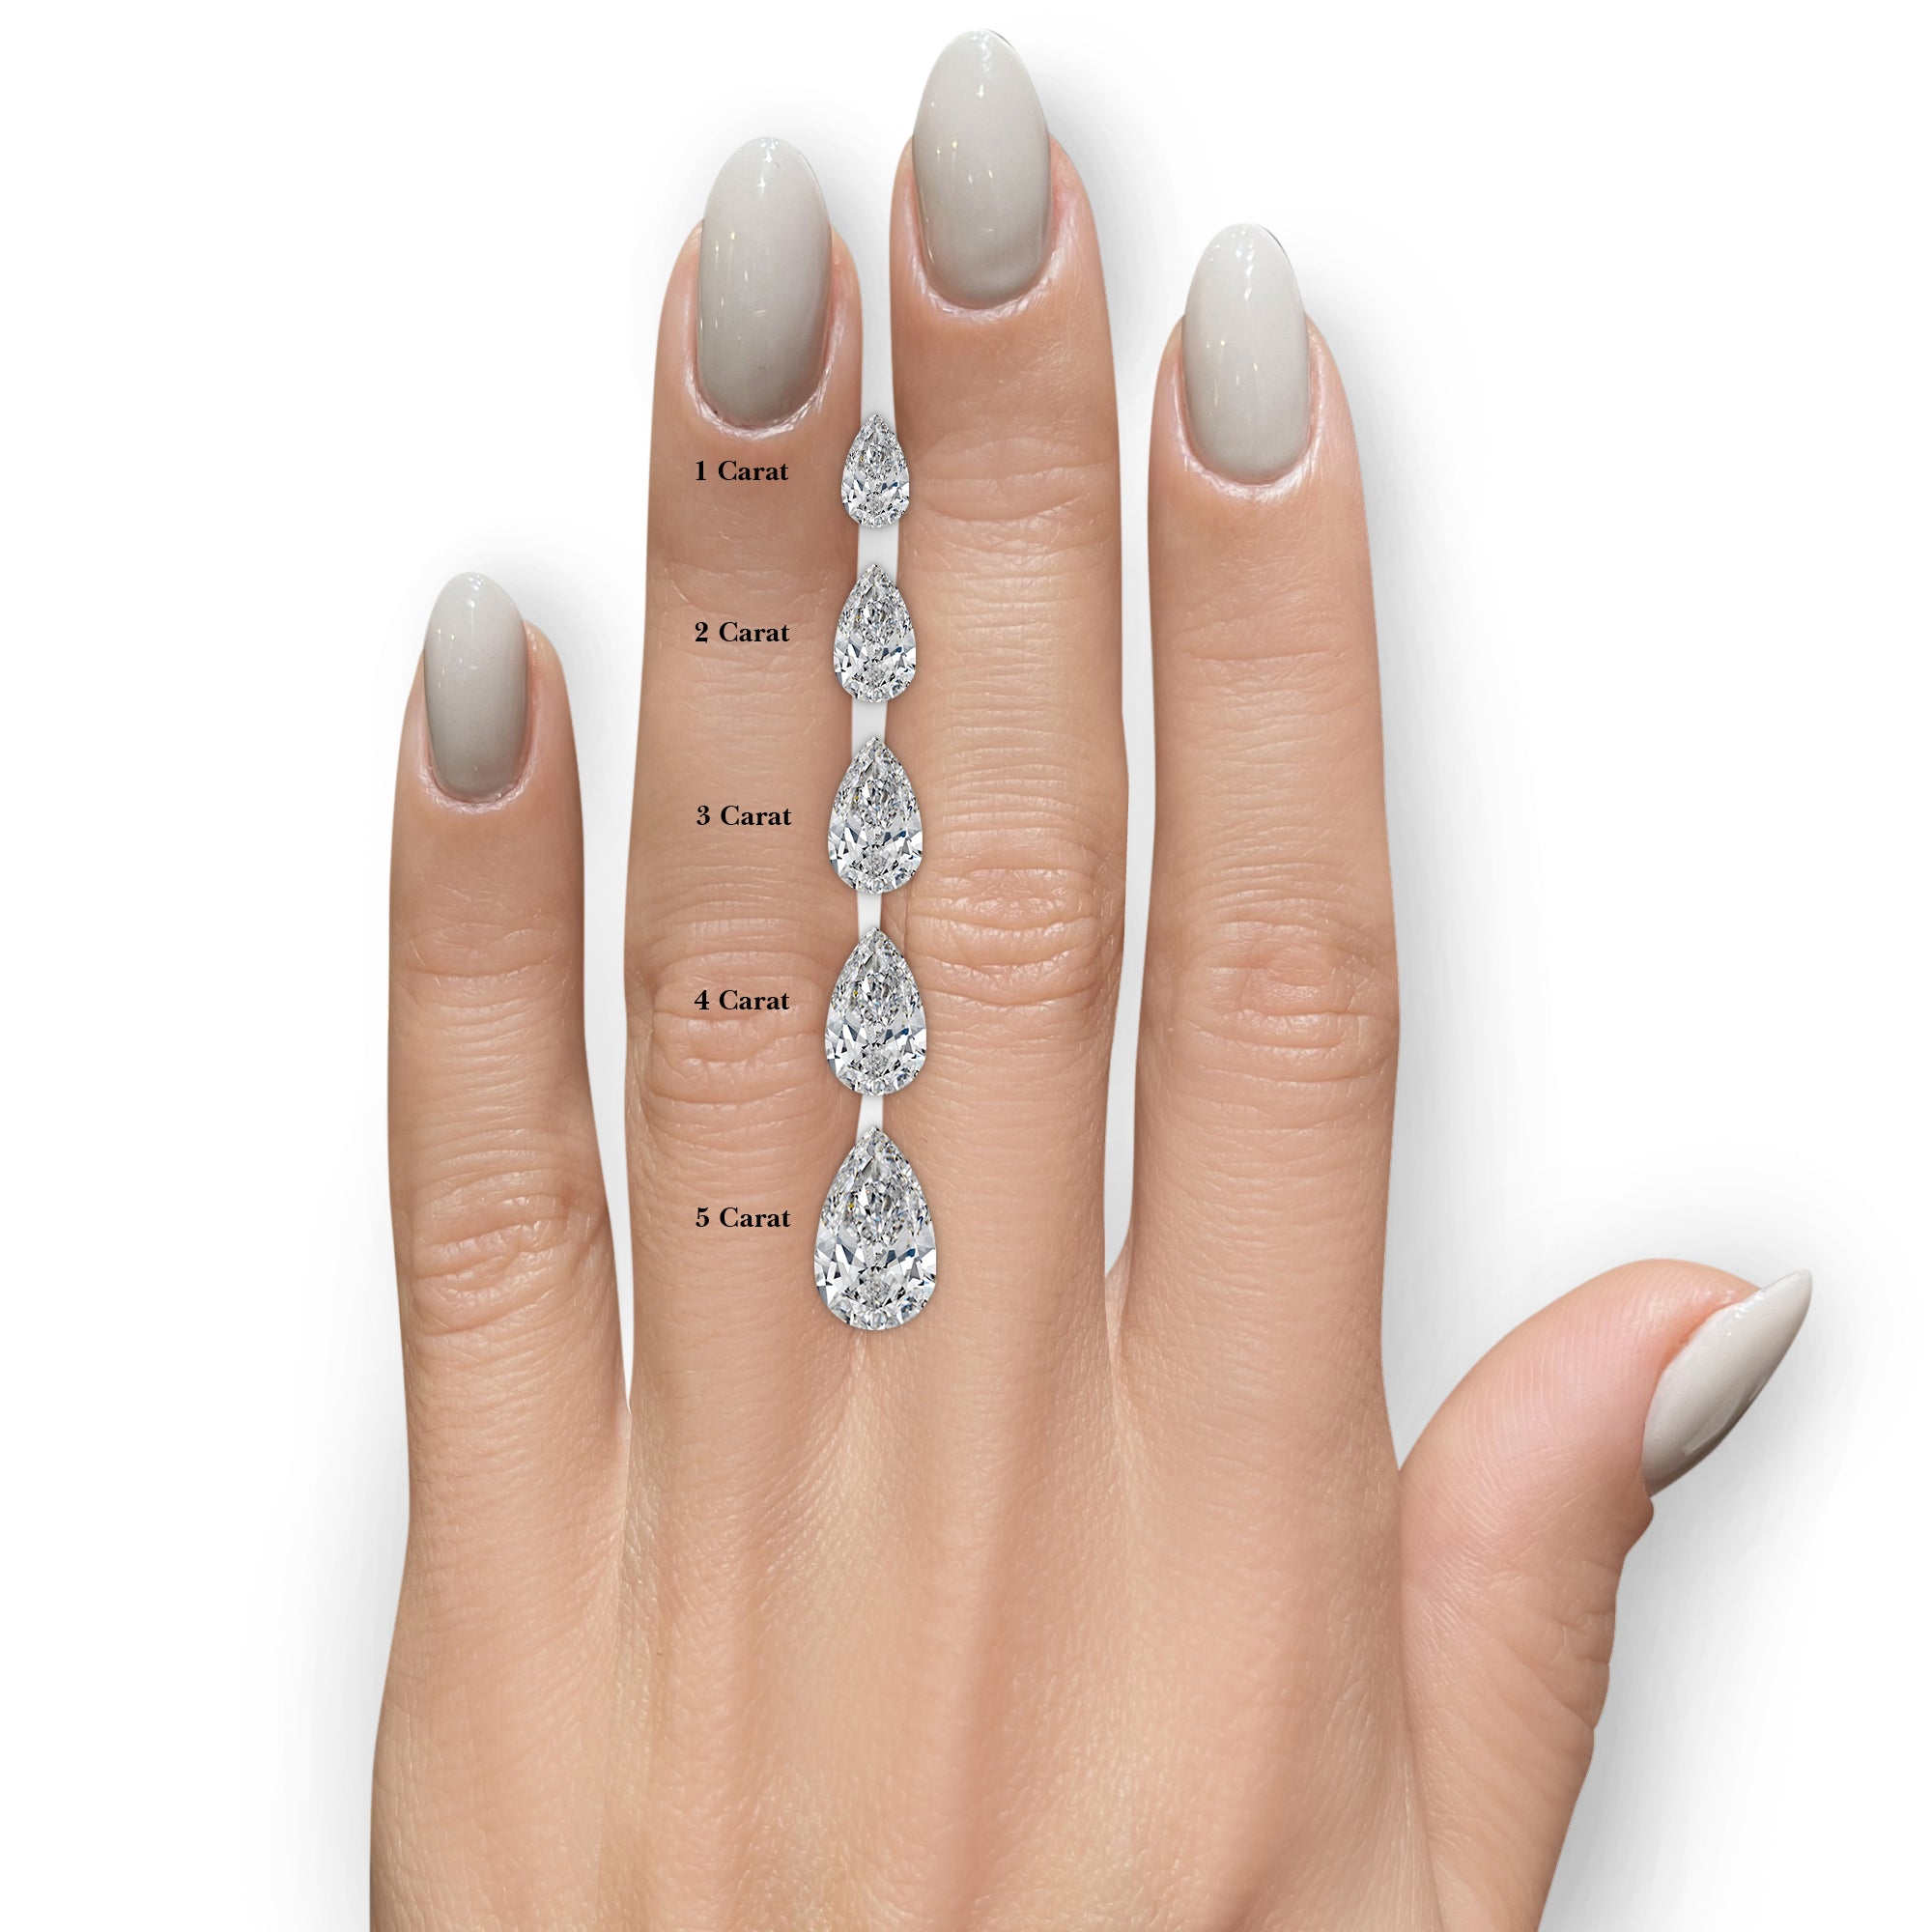 Mia Diamond Engagement Ring -18K White Gold